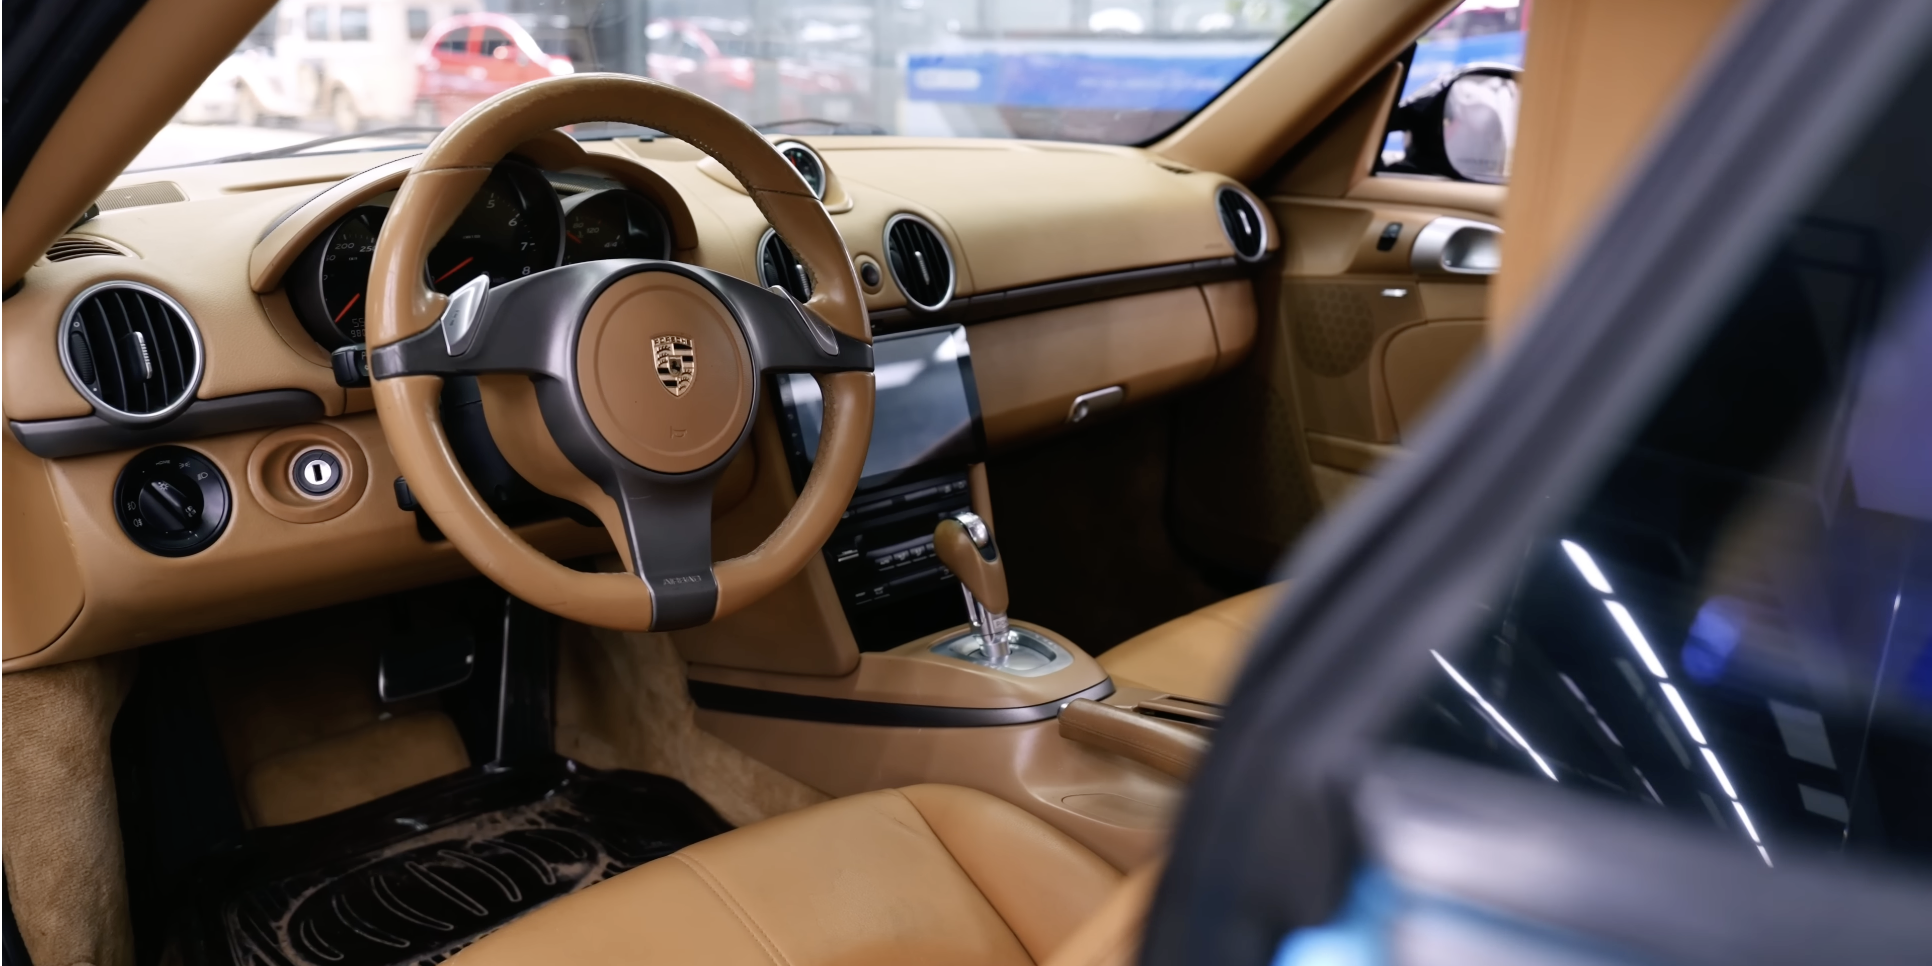 Thợ Việt ‘lột xác’ Porsche Cayman 15 tuổi theo phong cách xe đời mới, thêm màn hình Android và trần sao kiểu Rolls-Royce